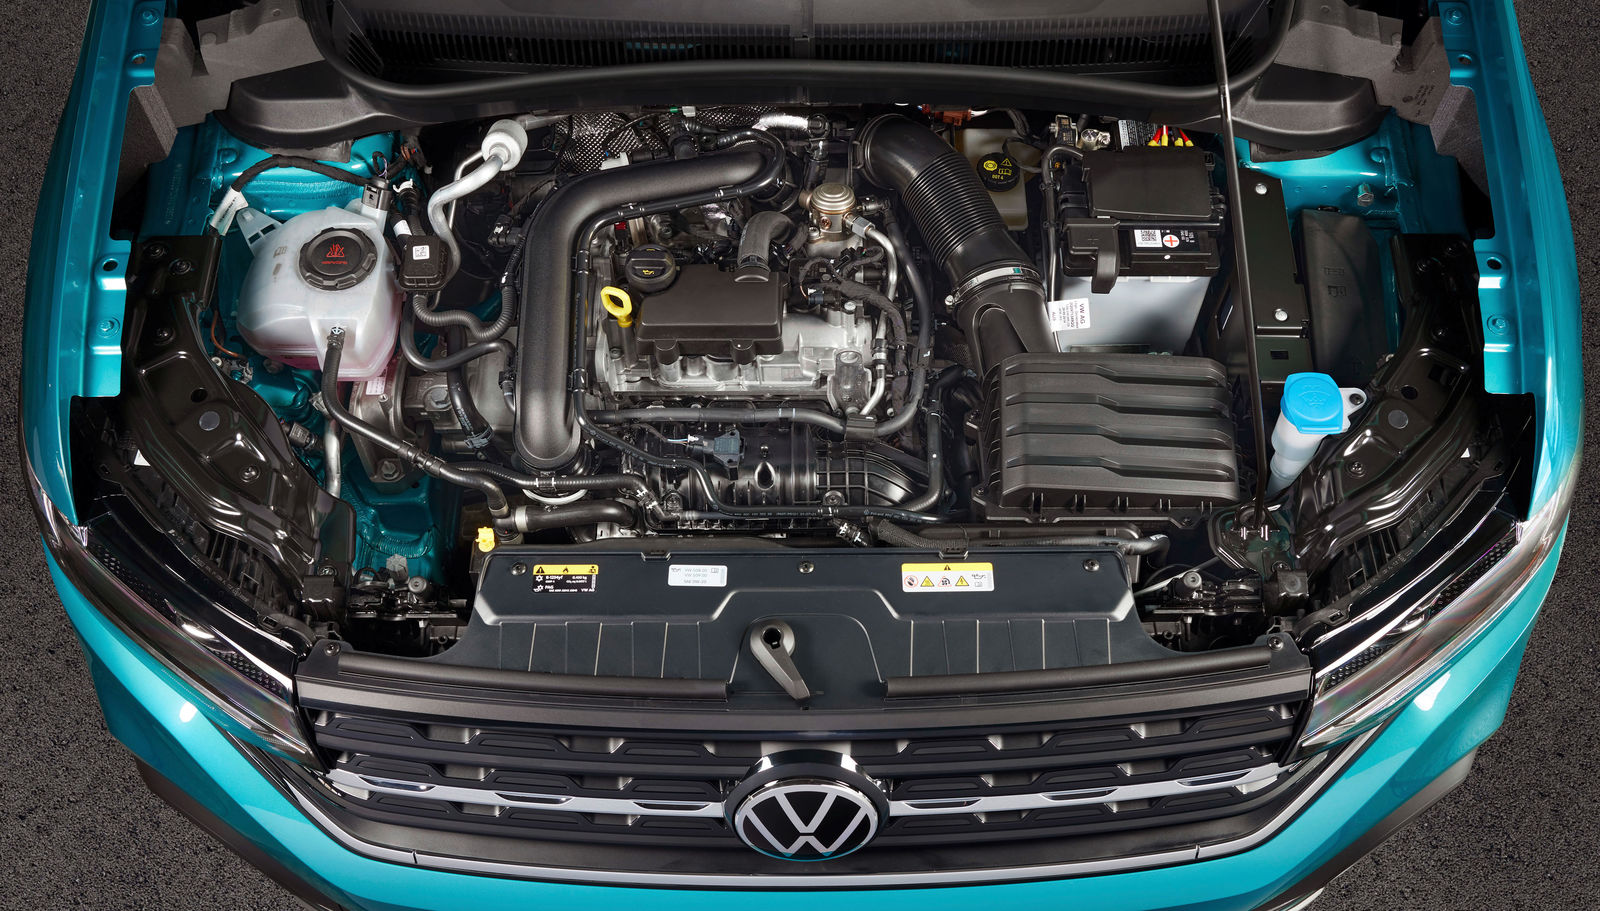 Serviceheft Volkswagen T-Cross 2018 - 2023 – Car Manuals